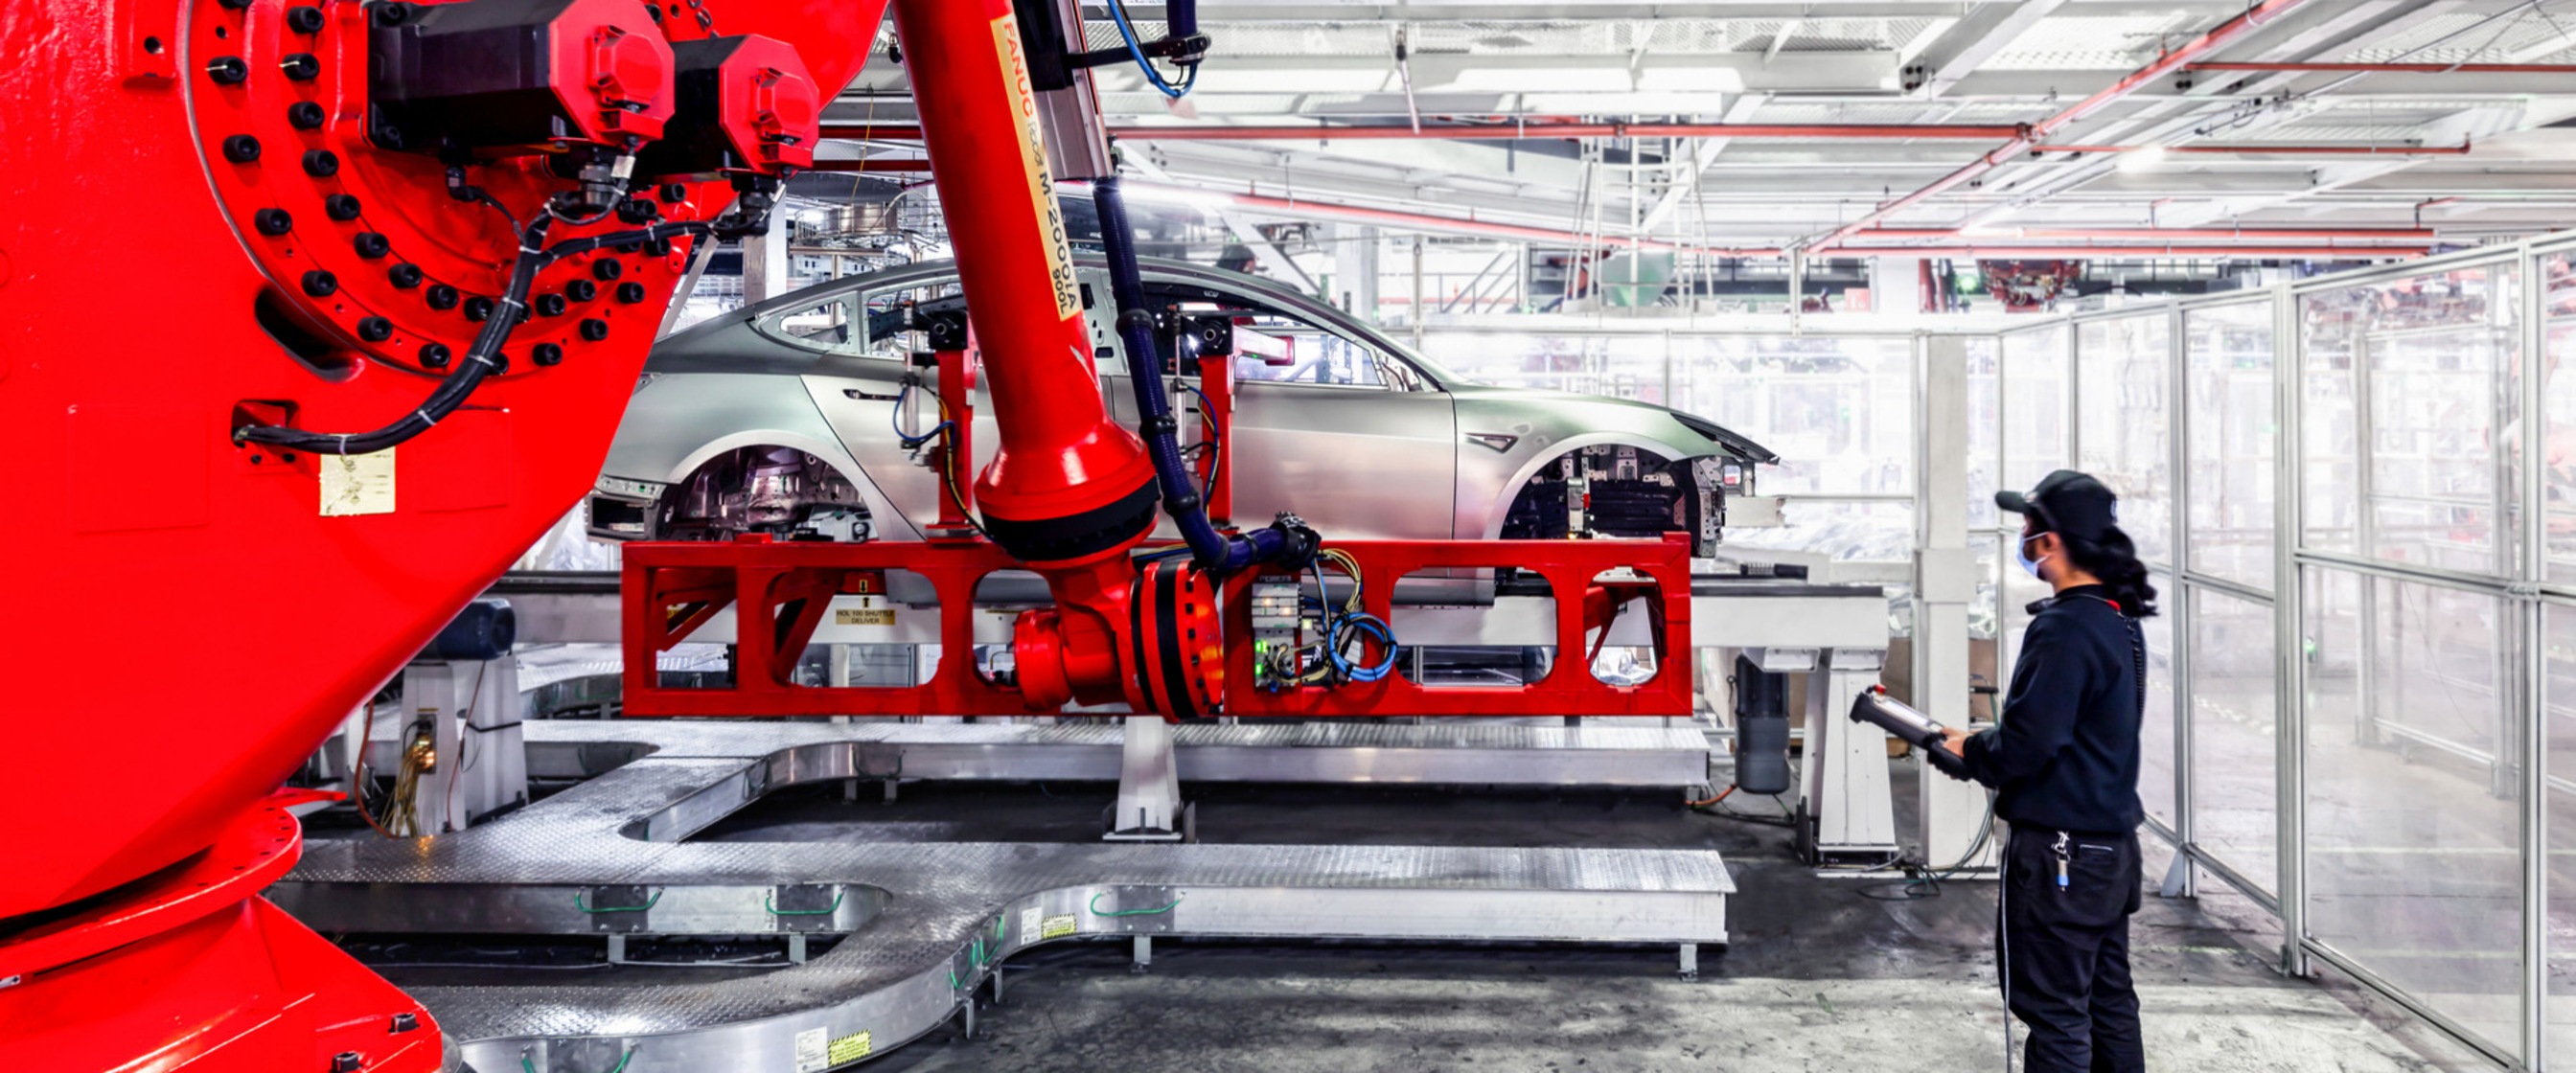 Tesla's factory floor